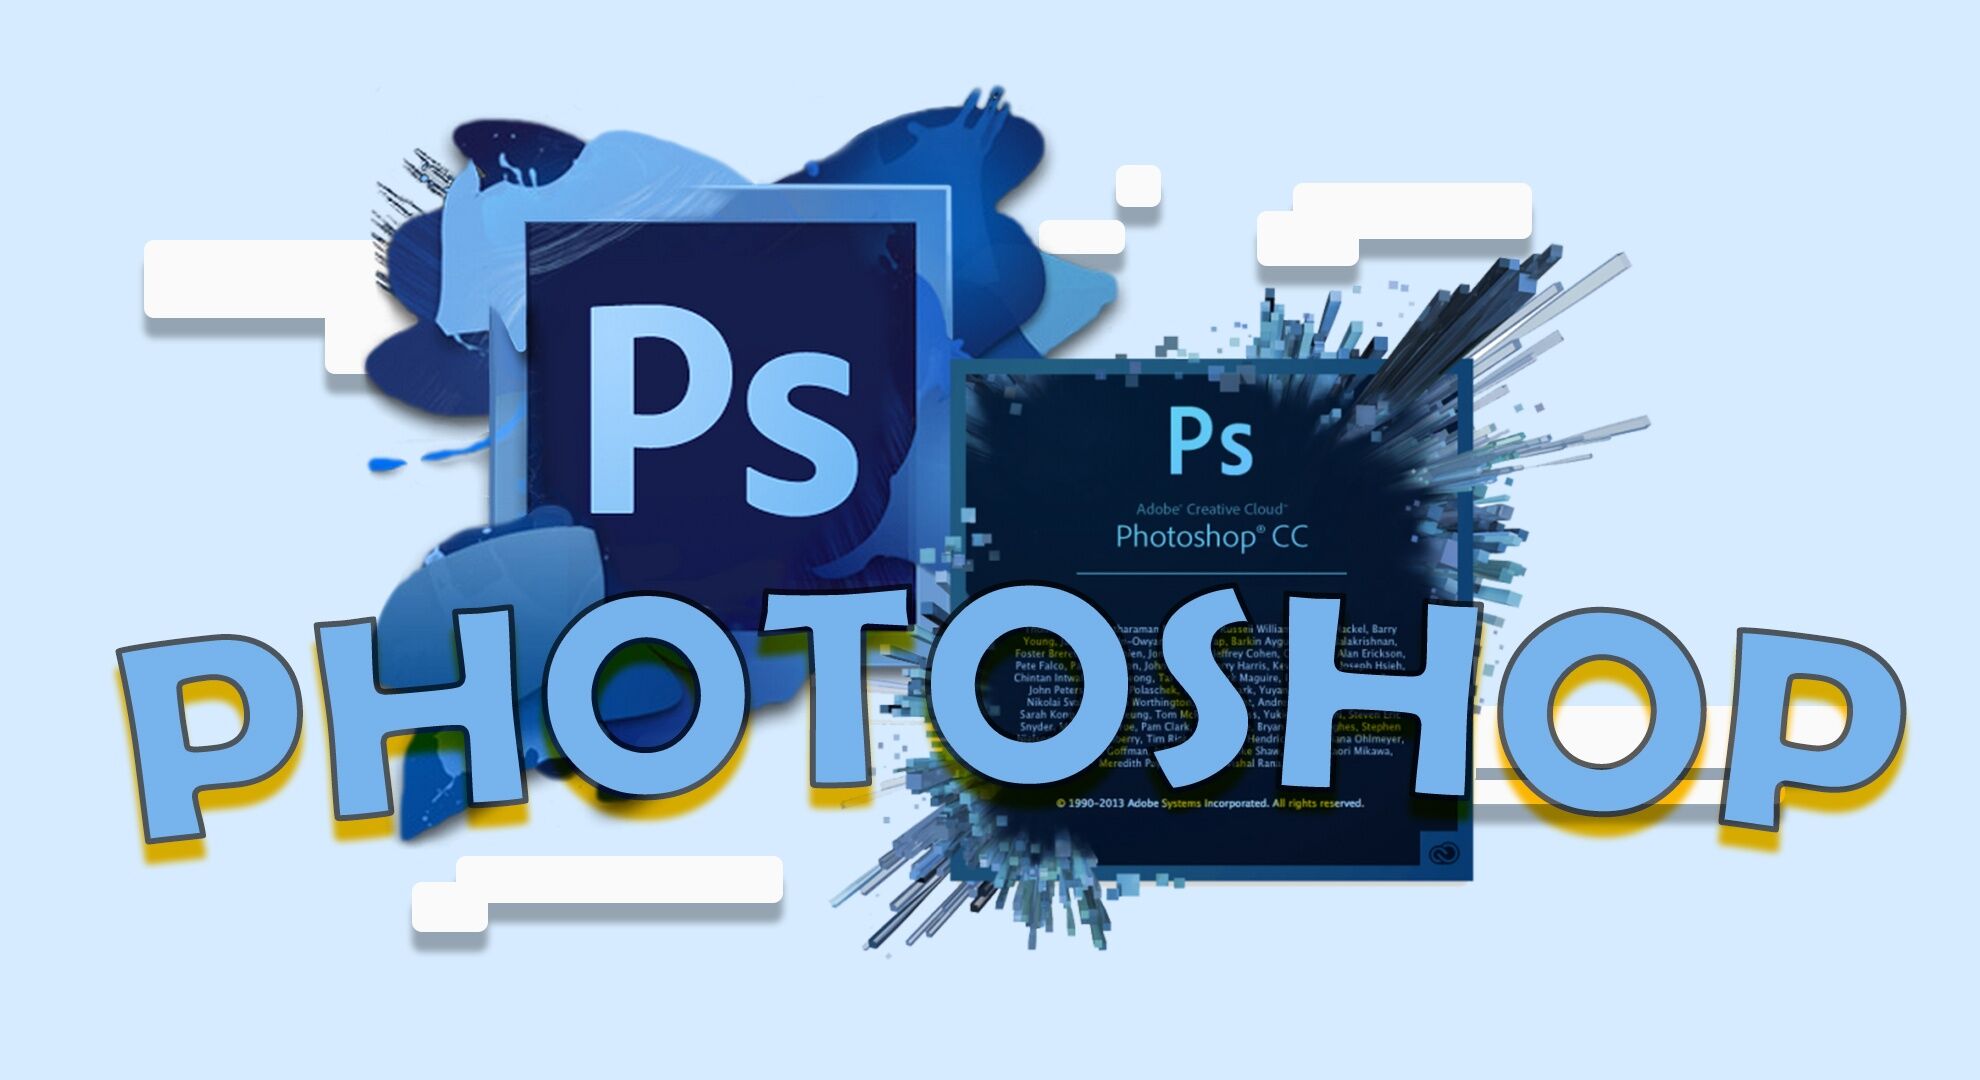 Adobe photoshop merupakan aplikasi berbasis